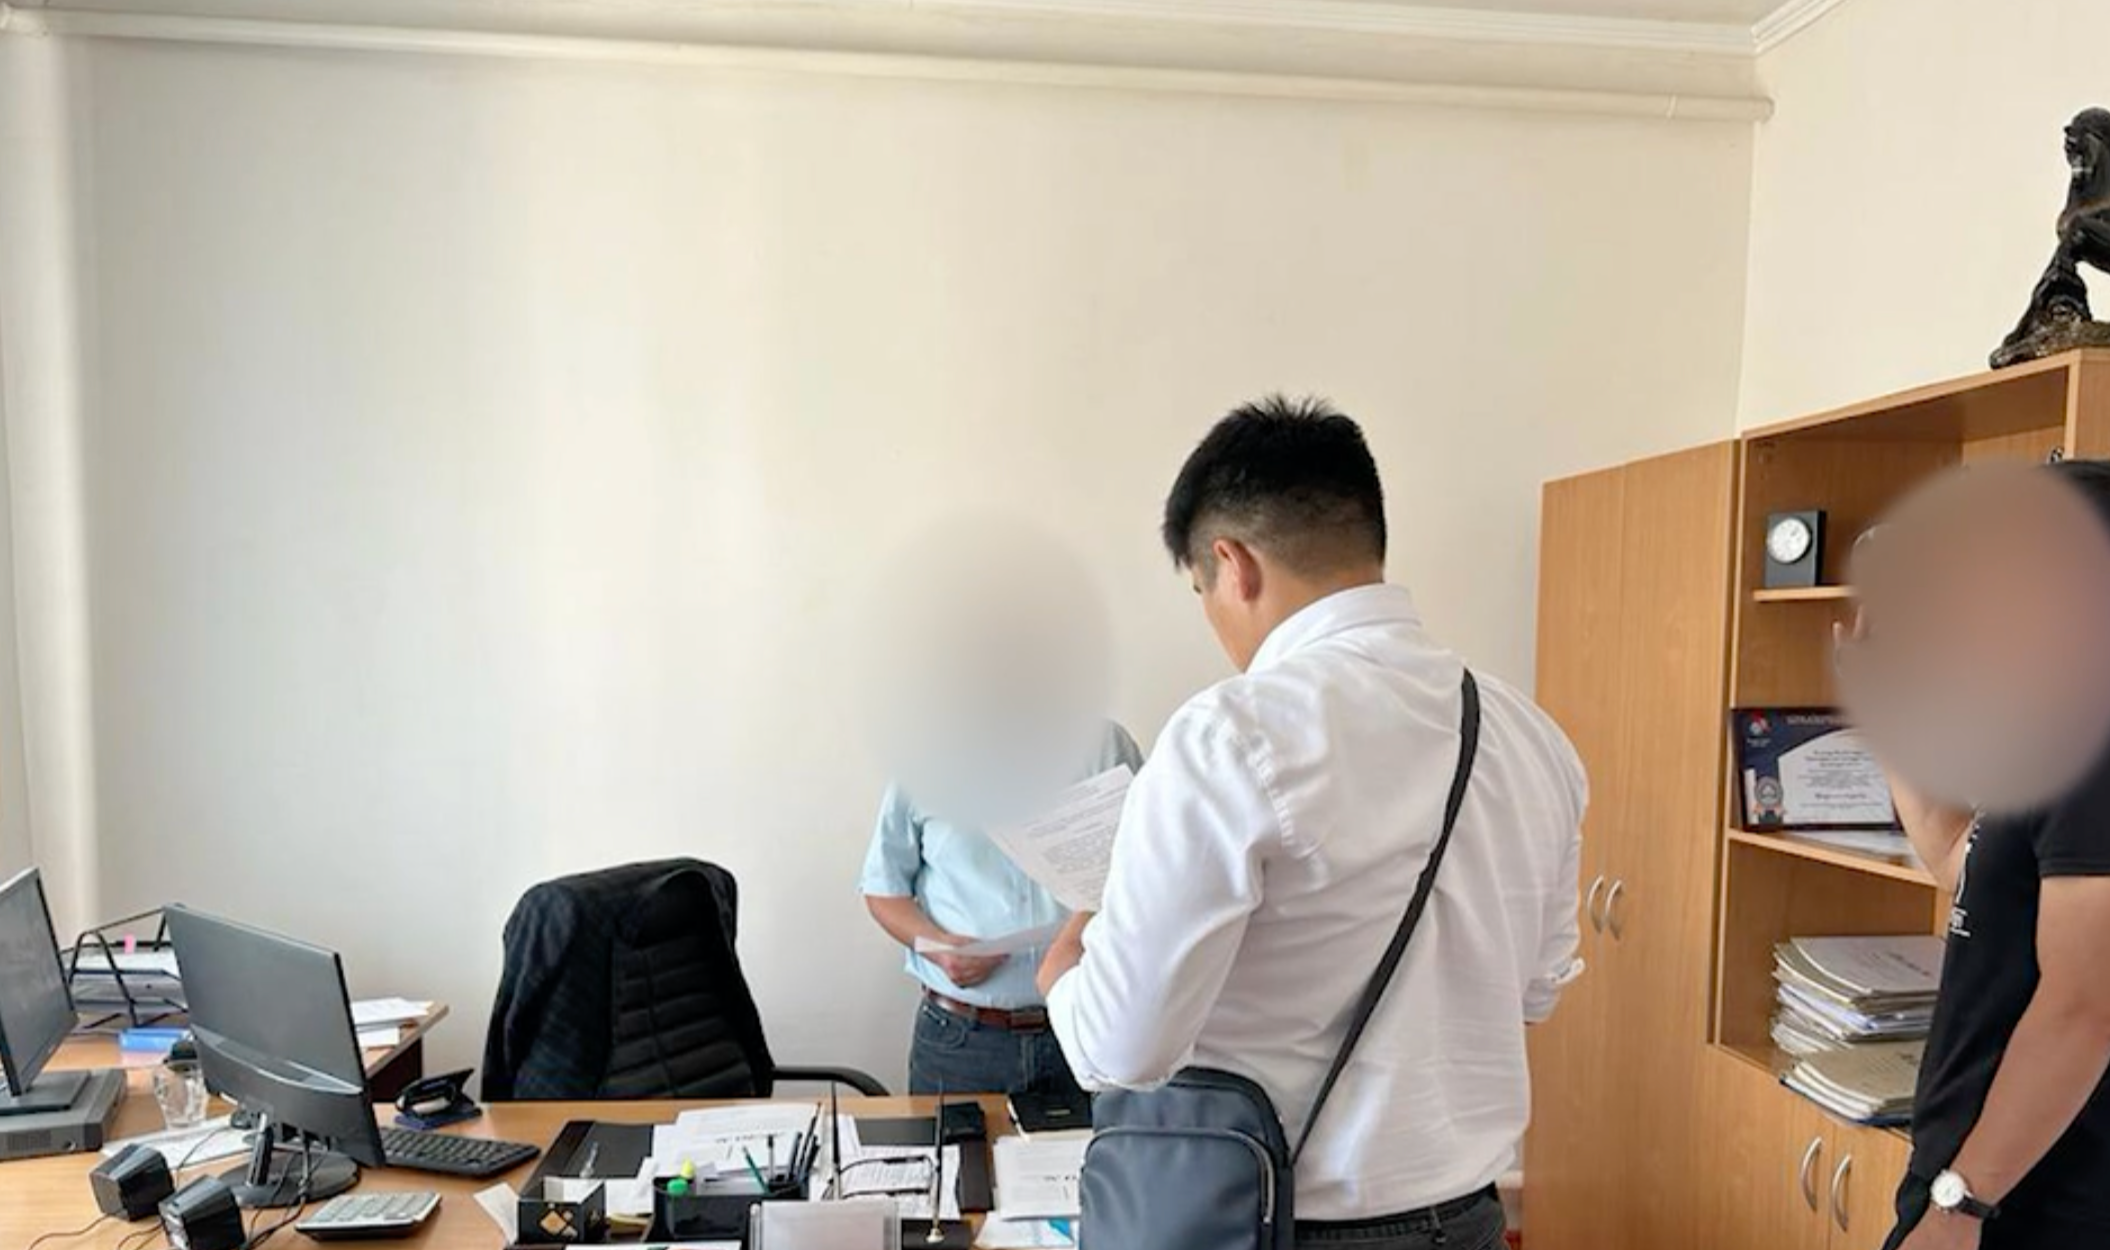 Сотрудники филиала "Кыргызалтын" покупали запаски и ГСМ для нерабочей спецтехники — ущерб составил более 12 млн сомов